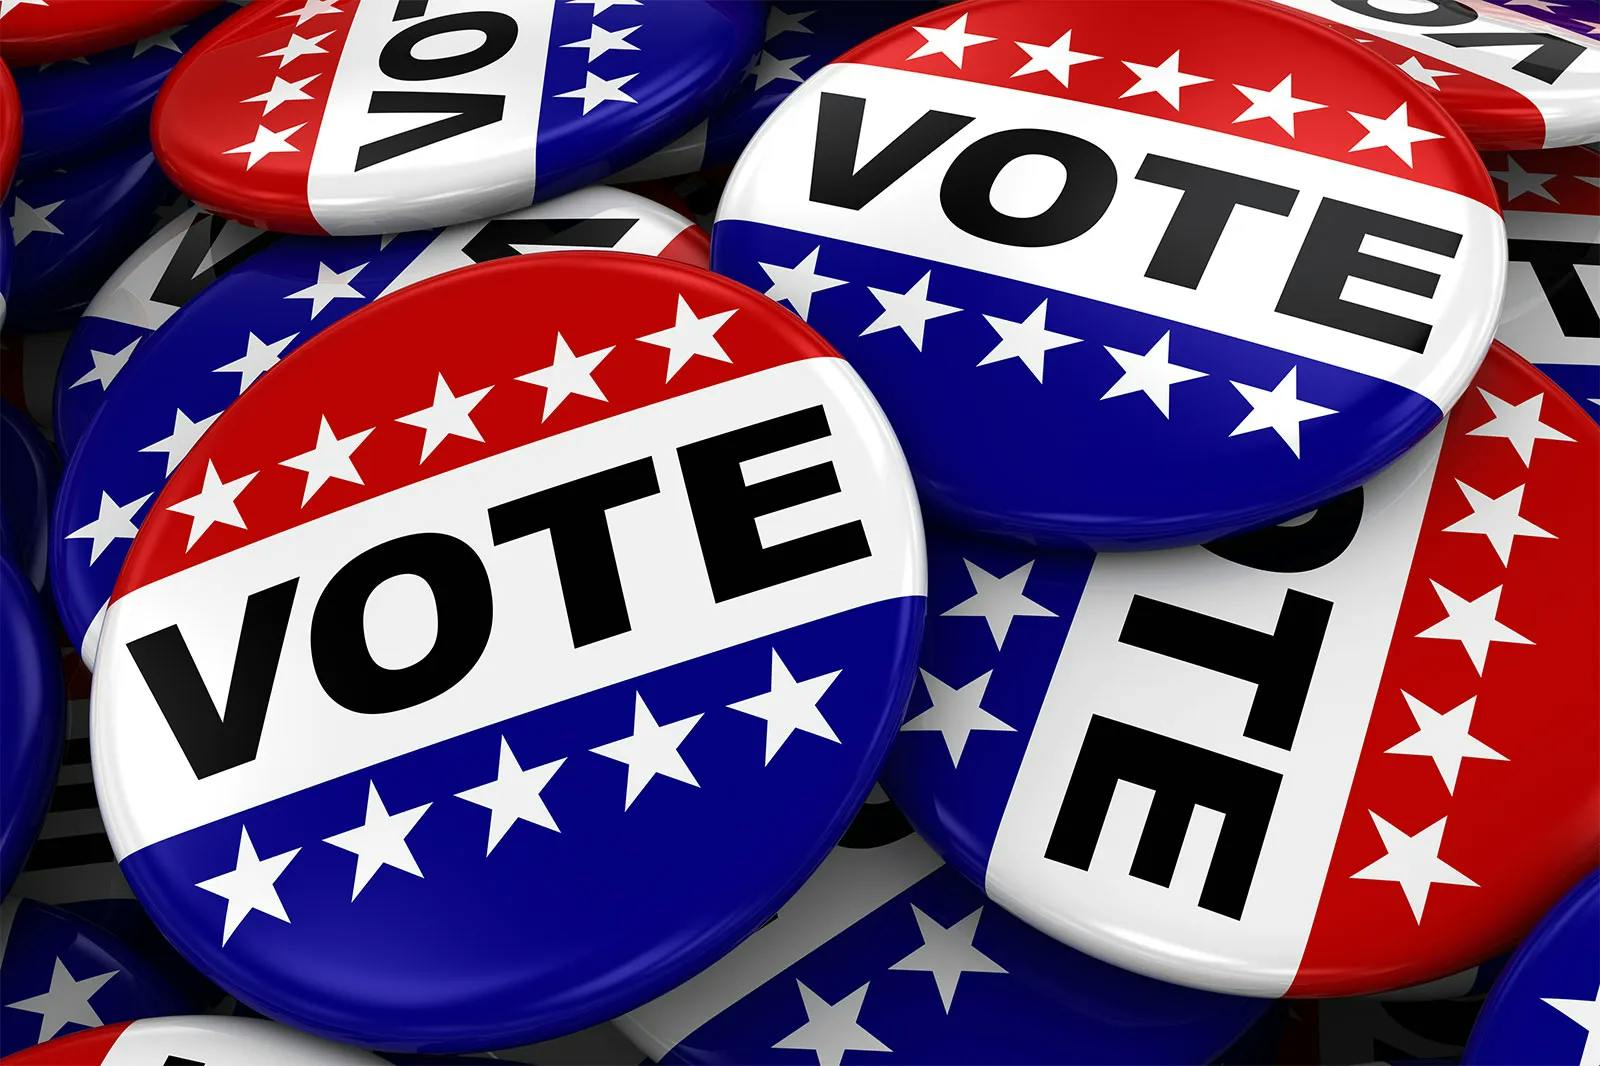 Election---Button-Vote-stripes-politics-campaign.webp